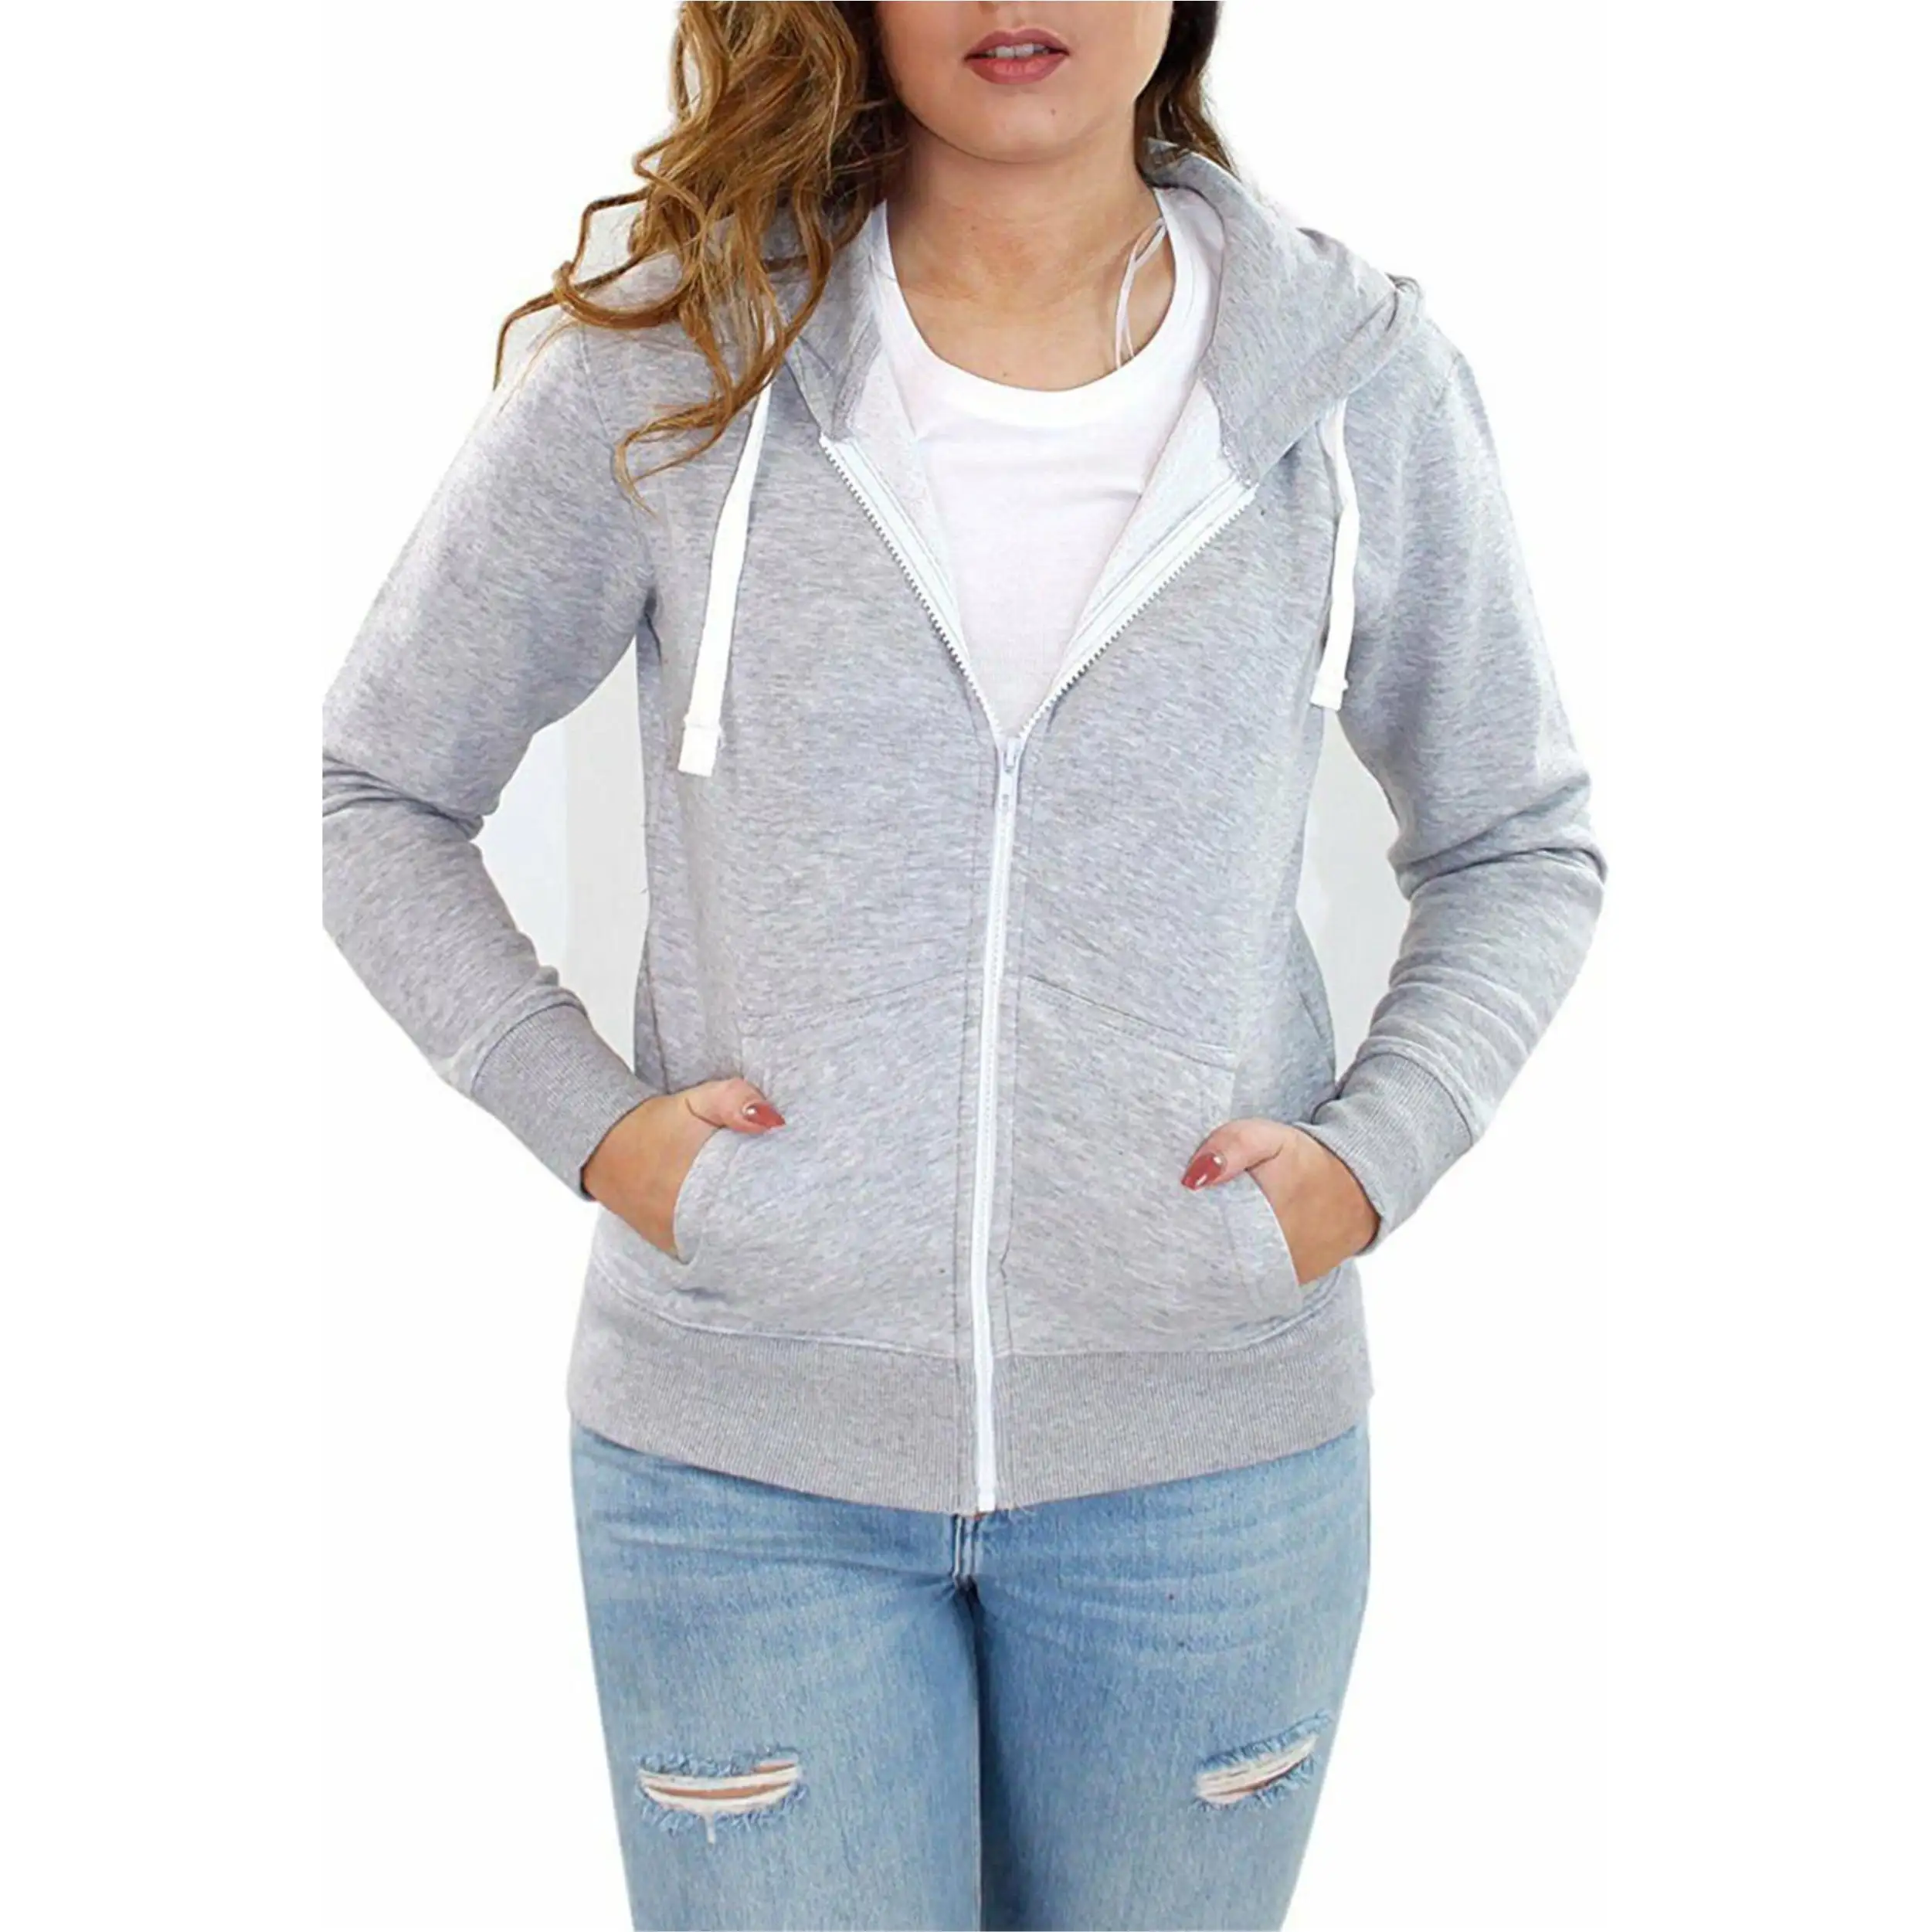 Women Clothing Custom Logo Printing Long Sleeve Zipper Hoodie Sweatshirts Women Hoodie Made in Pakistan